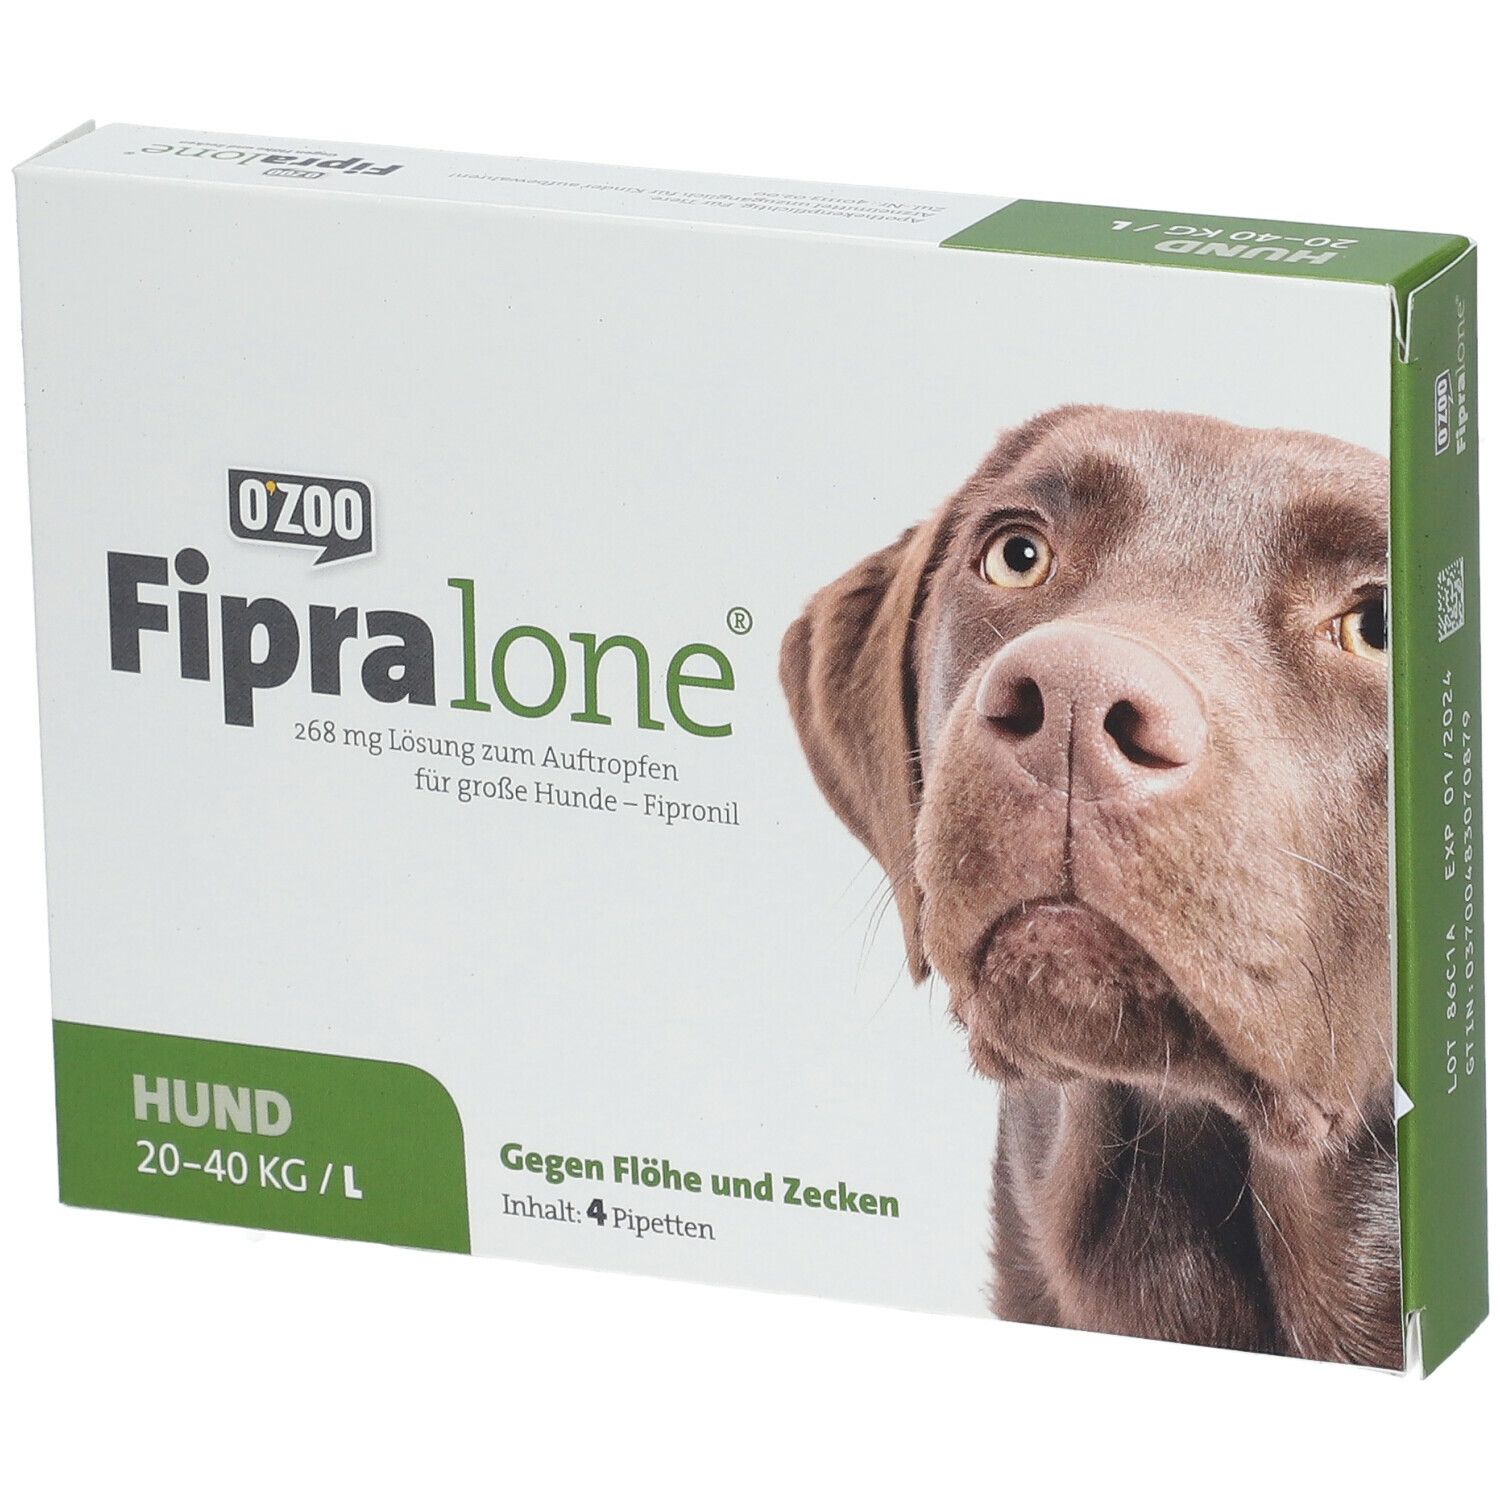 FIPRALONE® 268mg für große Hunde